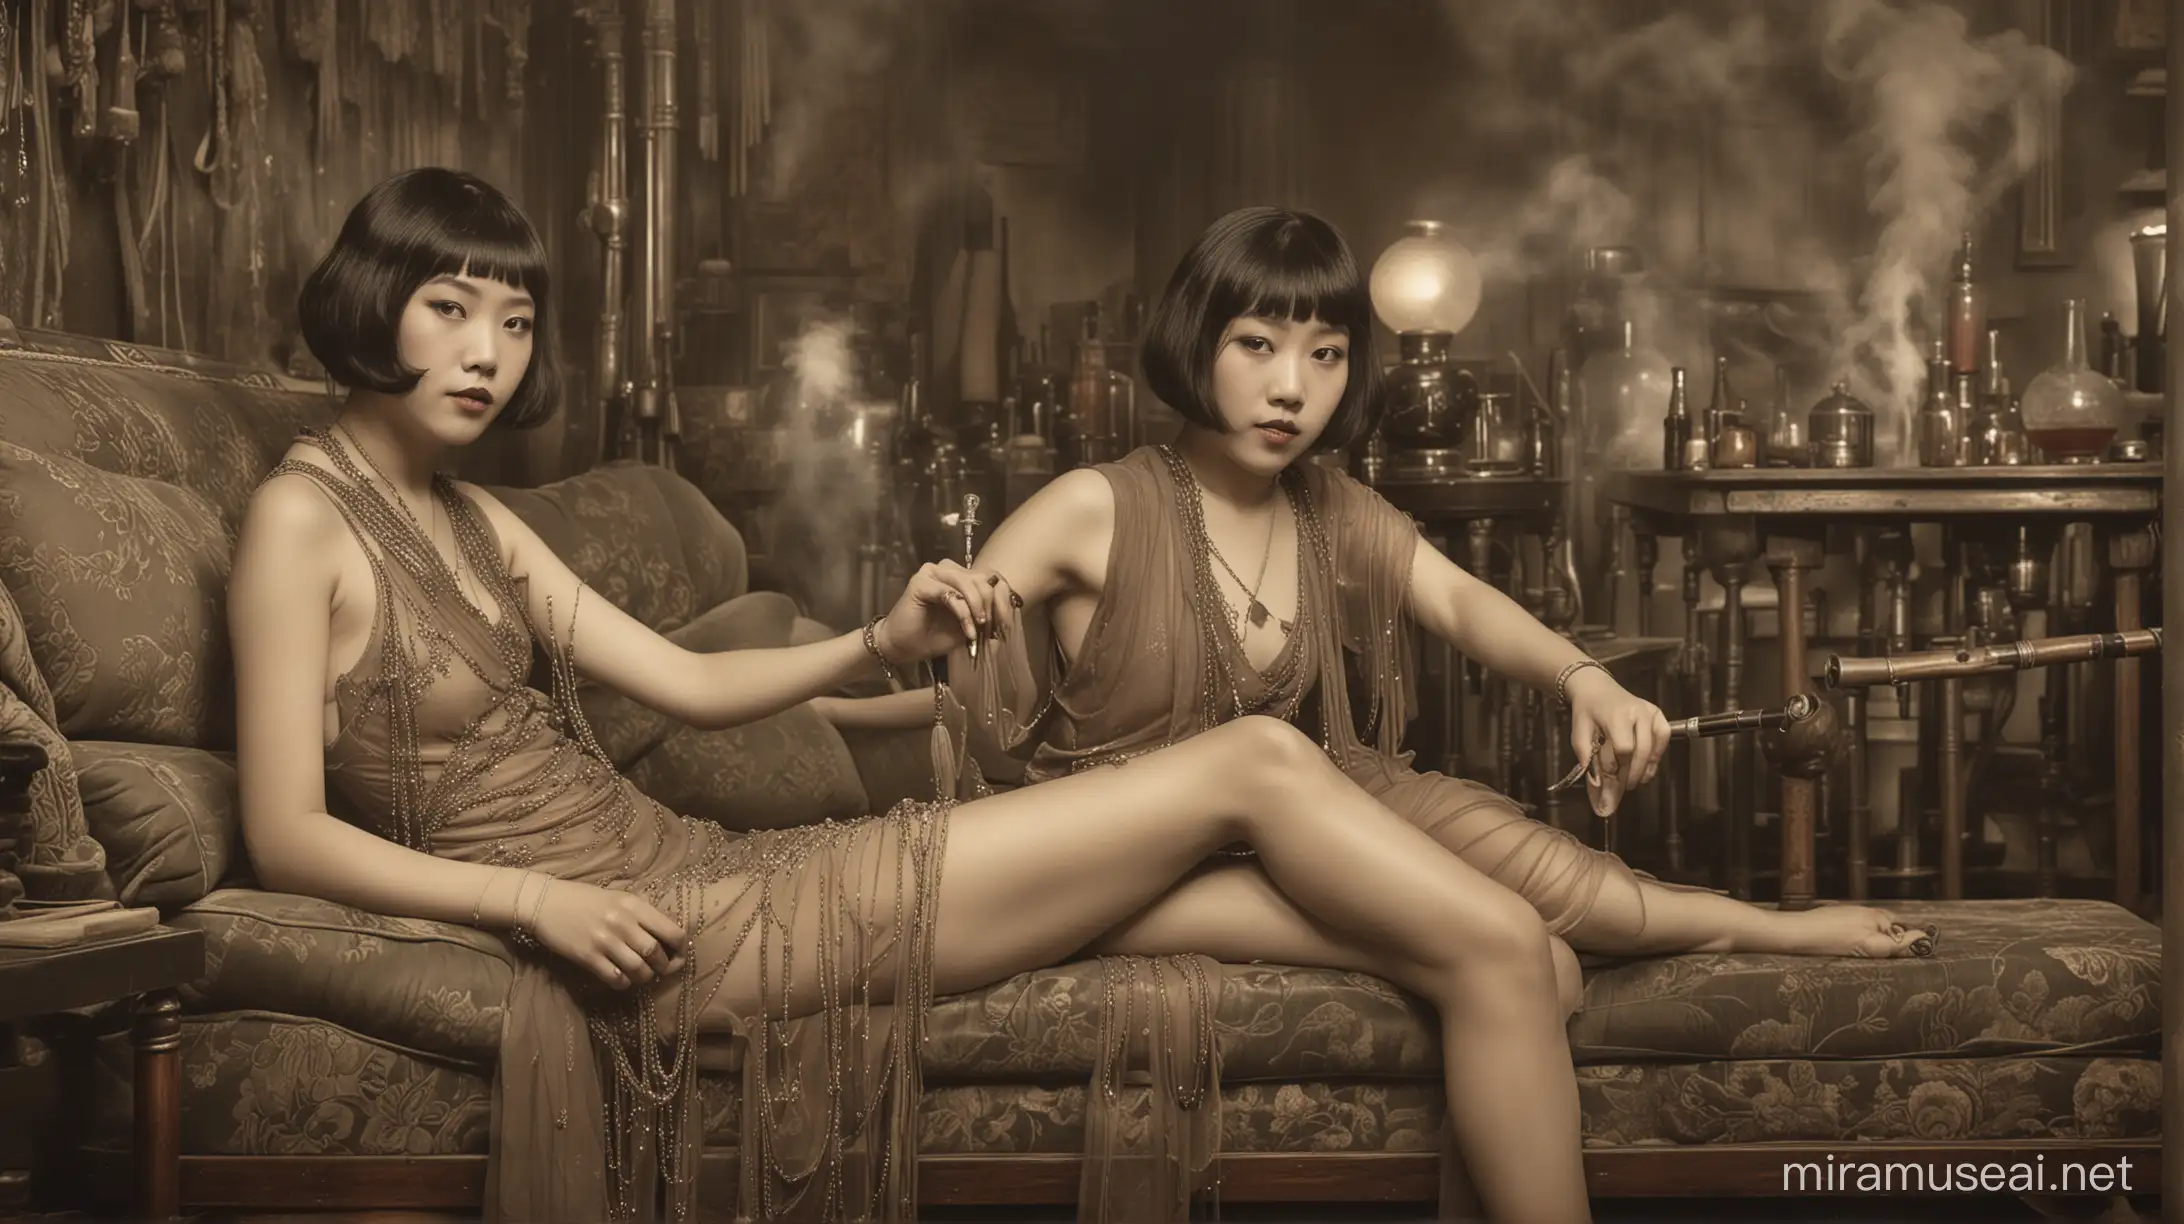 Decadent Shanghai Underworld Chinese Flapper Girls in Opium Den